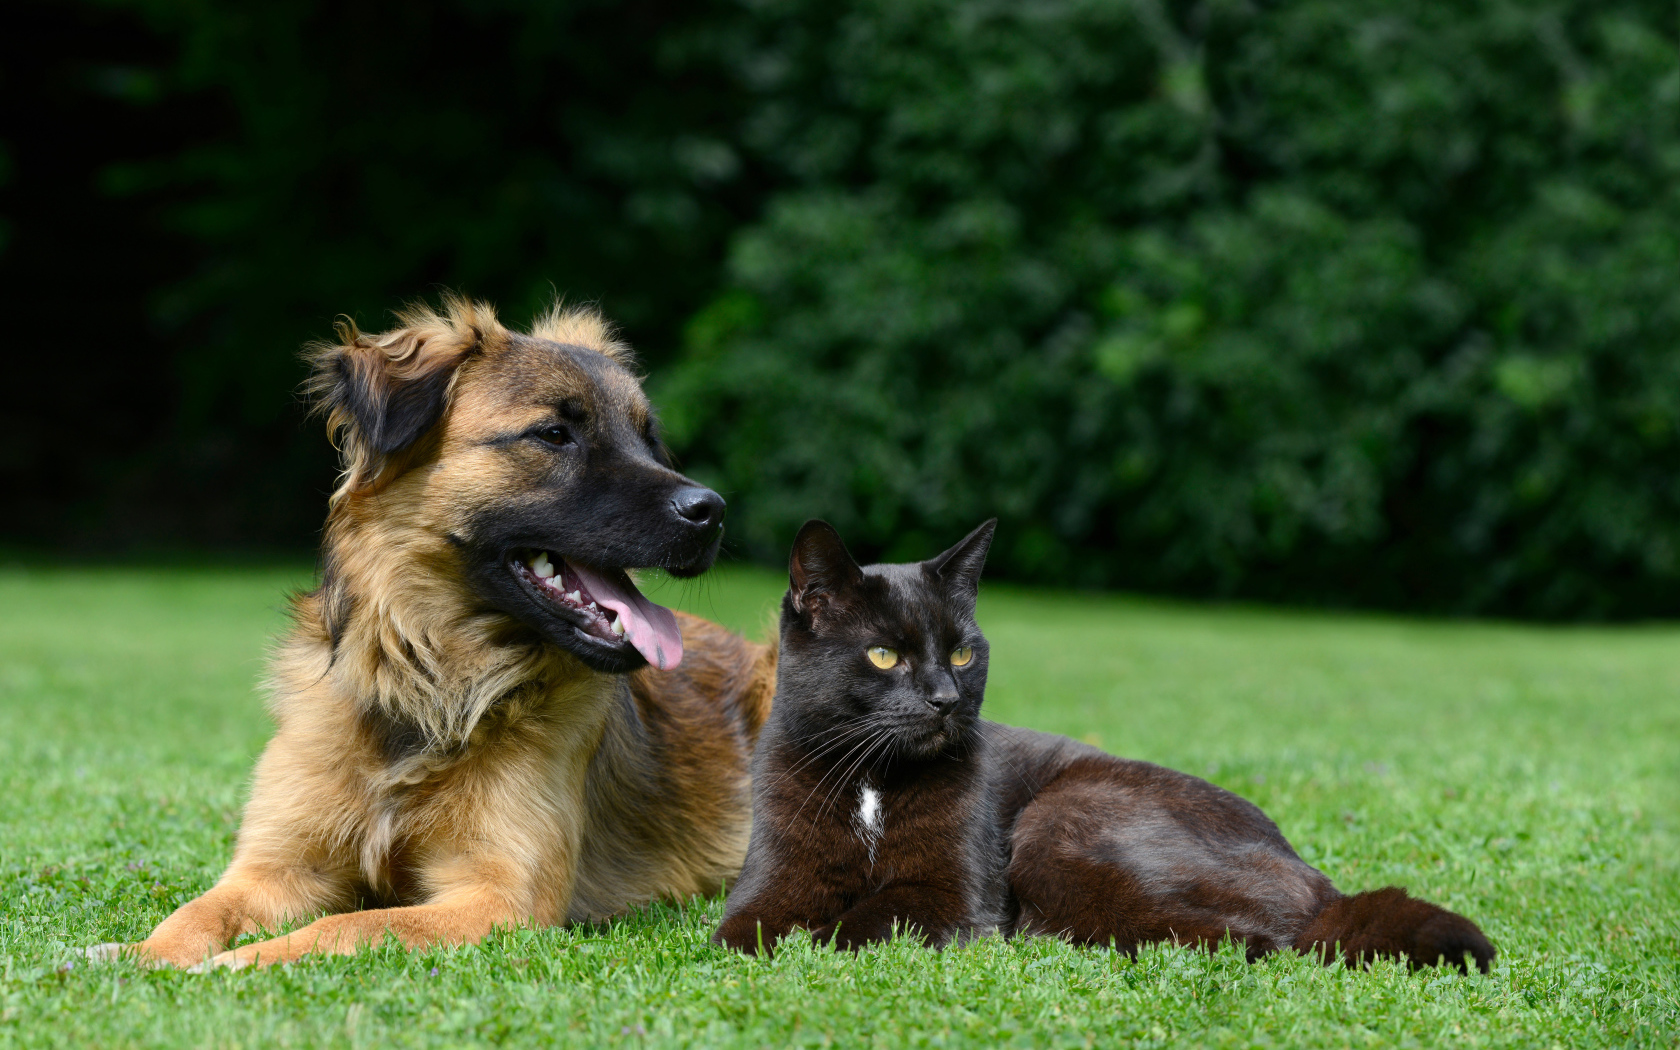 Черный кот и собака лежат на зеленой траве